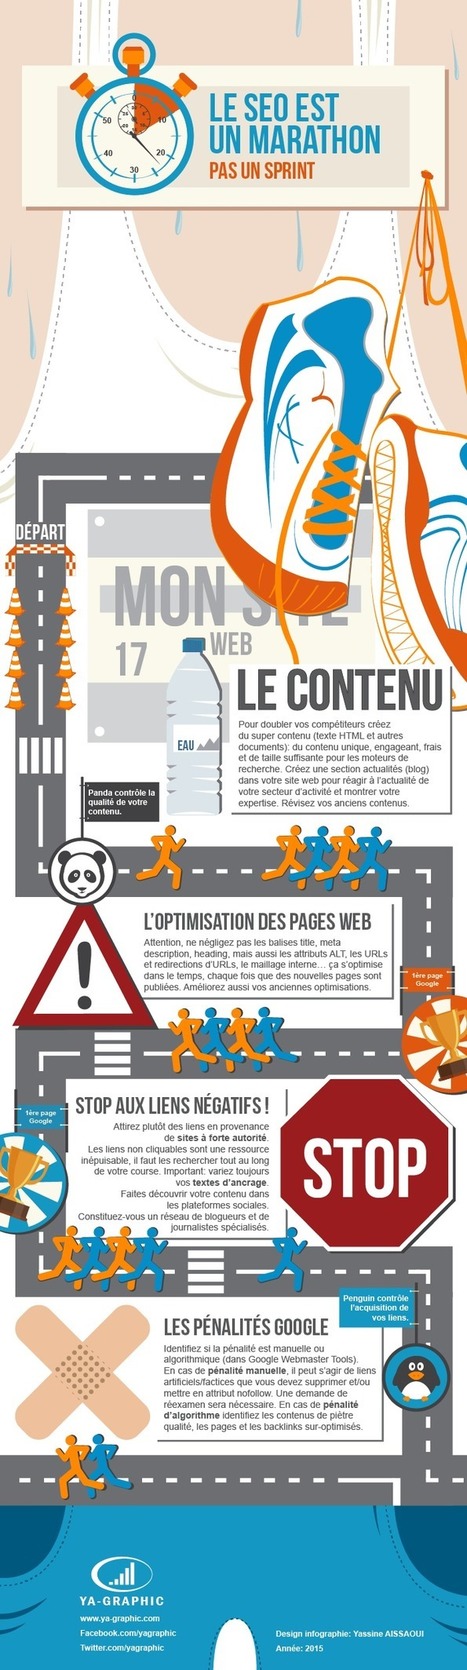 Infographie : Le SEO est un marathon, pas un sprint | e-Social + AI DL IoT | Scoop.it